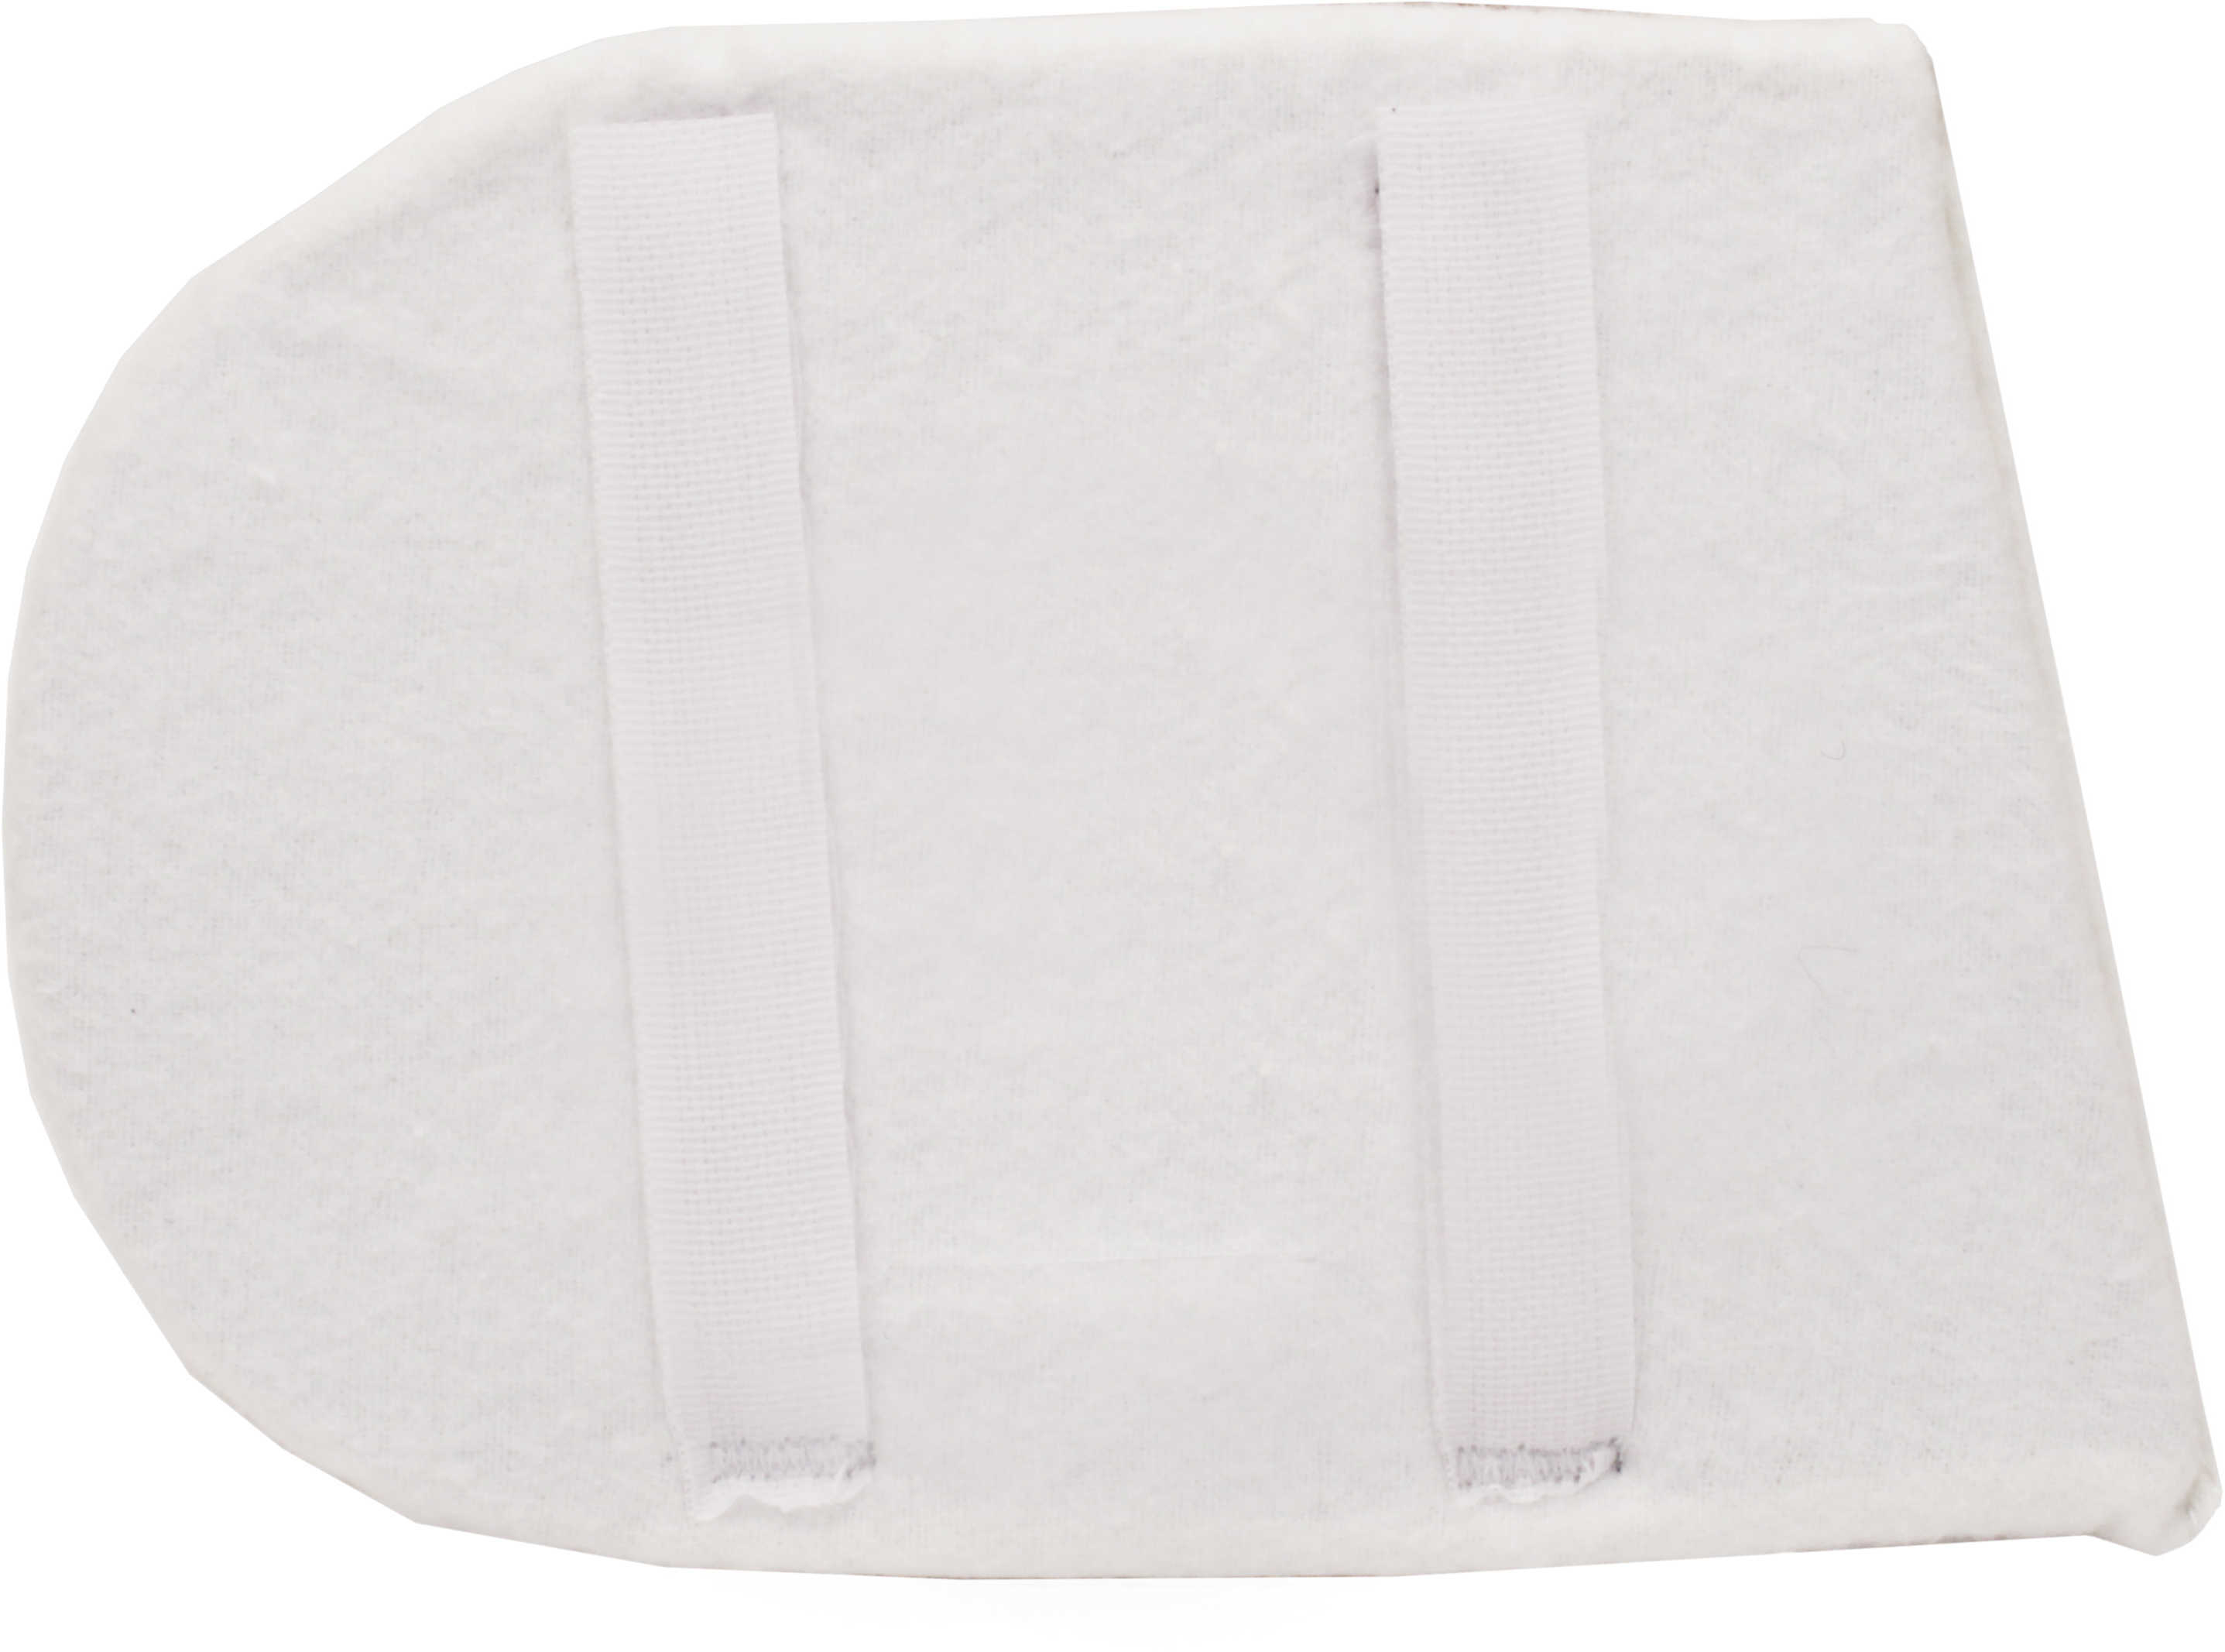 Caldwell 360000 Past Hidden Comfort For Women Ambidextrous Recoil Absorbing Foam White